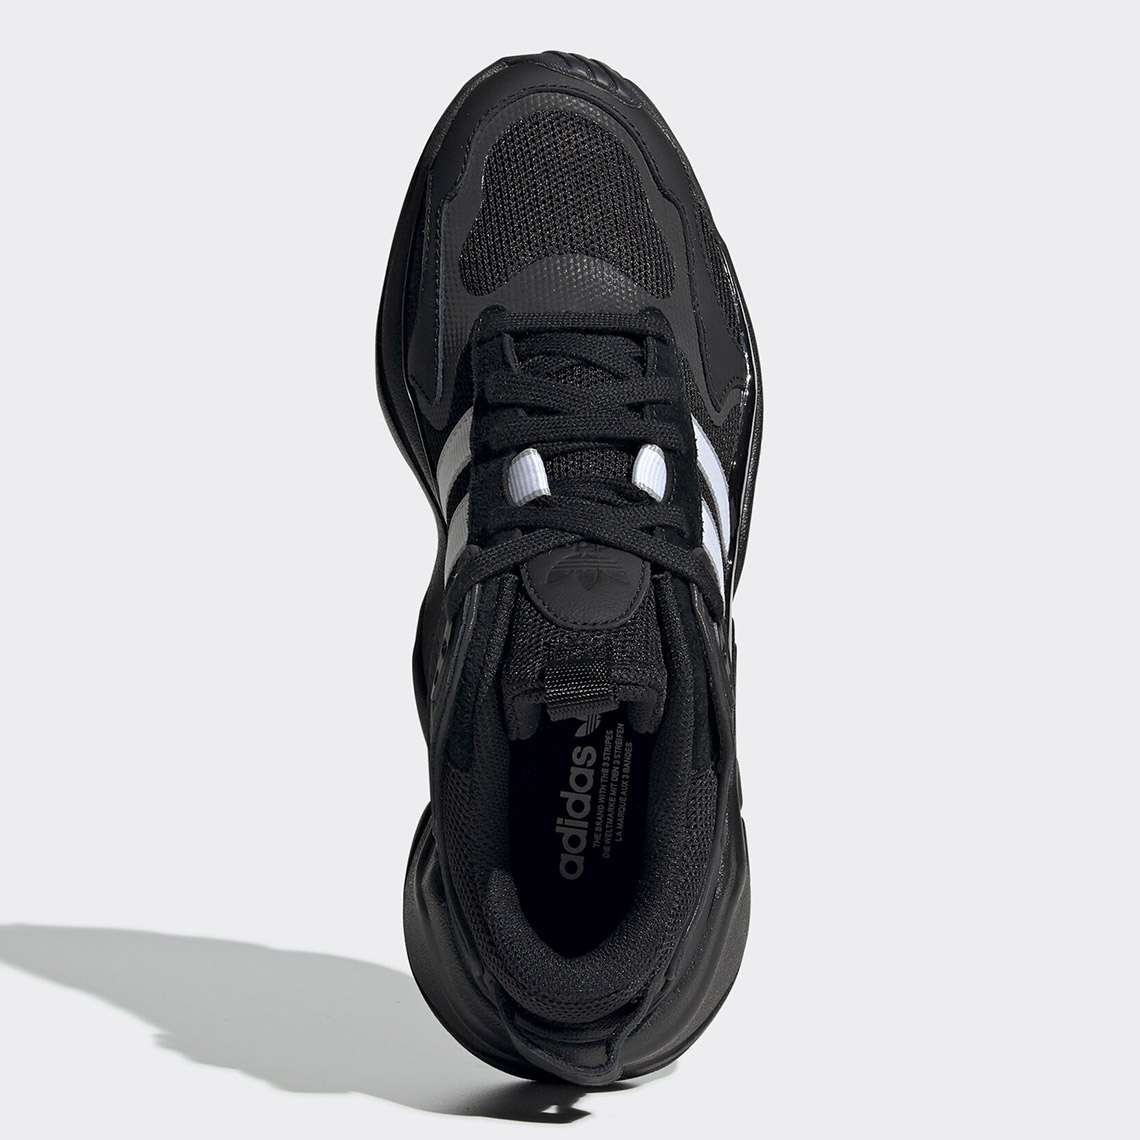 Adidas Magmur Runner Black White Ee5141 2